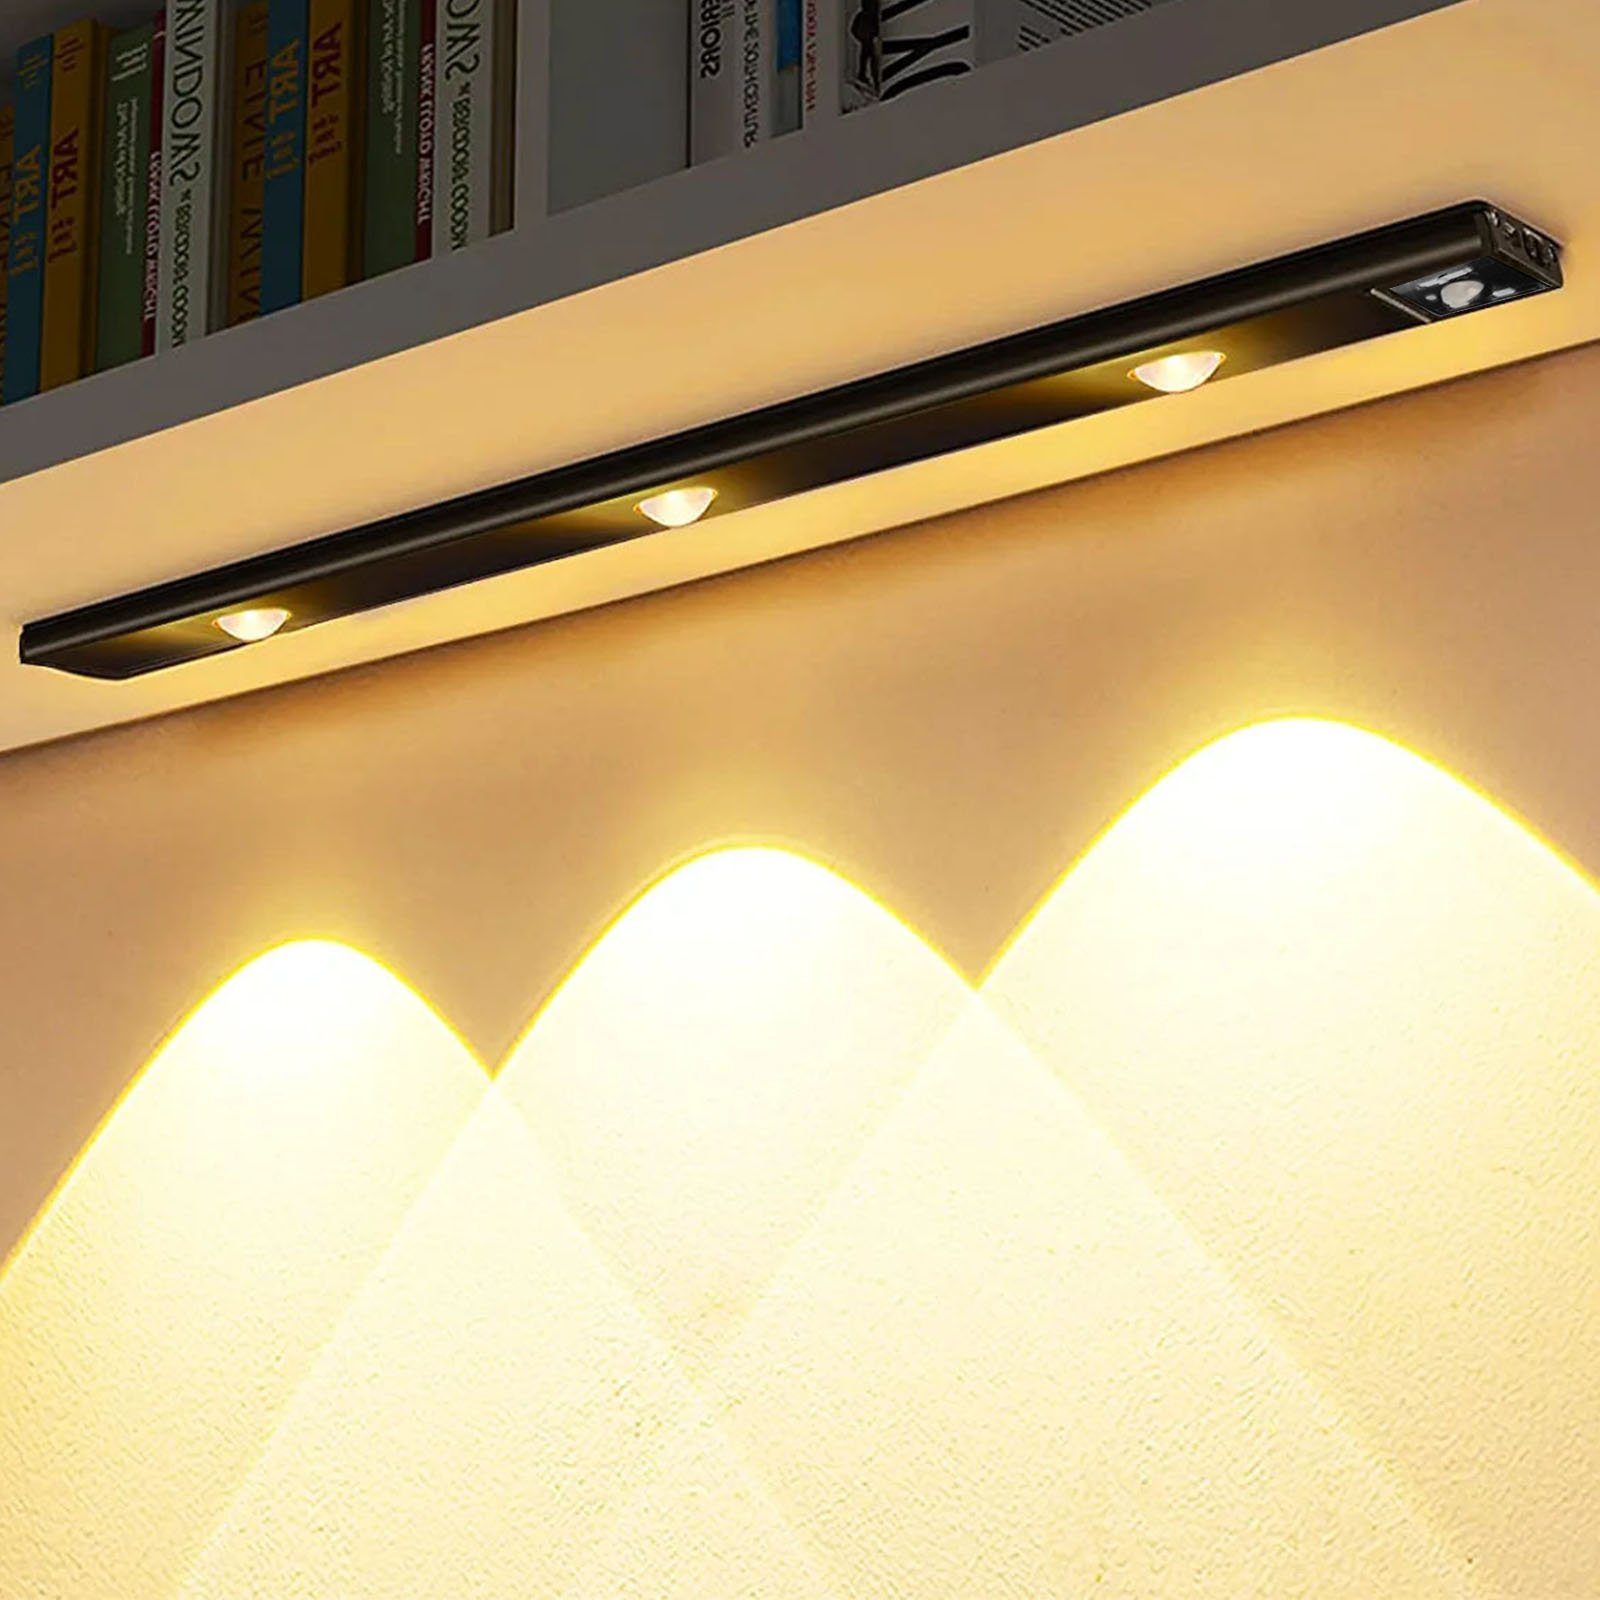 Sunicol LED Unterbauleuchte Schranklampe Bewegungsmelder, Magnetisch, Kabellose,3 Lichtfarben, Led Wandleuchte, Bewegungssensor, Ultradünne 120°-Induktion, USB-Laden für Unterbauleuchte Küche Schlafzimmer Kleiderschrank